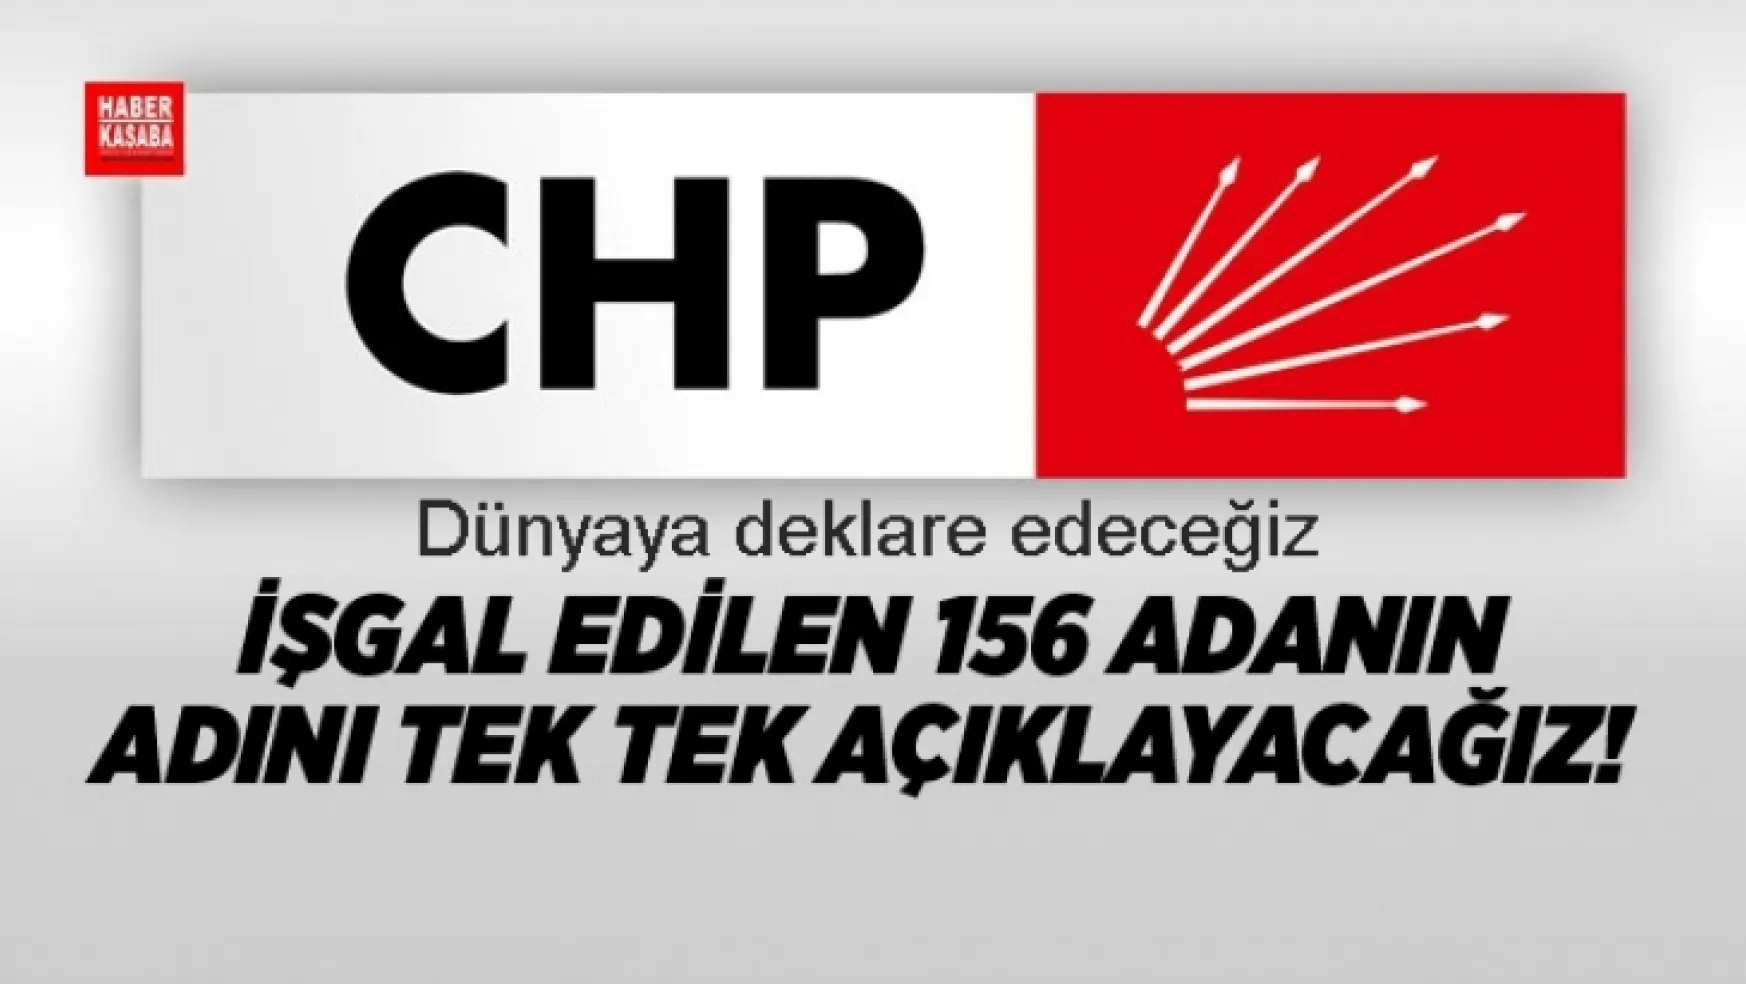 CHP 'İşgal edilen 156 adanın adını tek tek açıklayacak!'